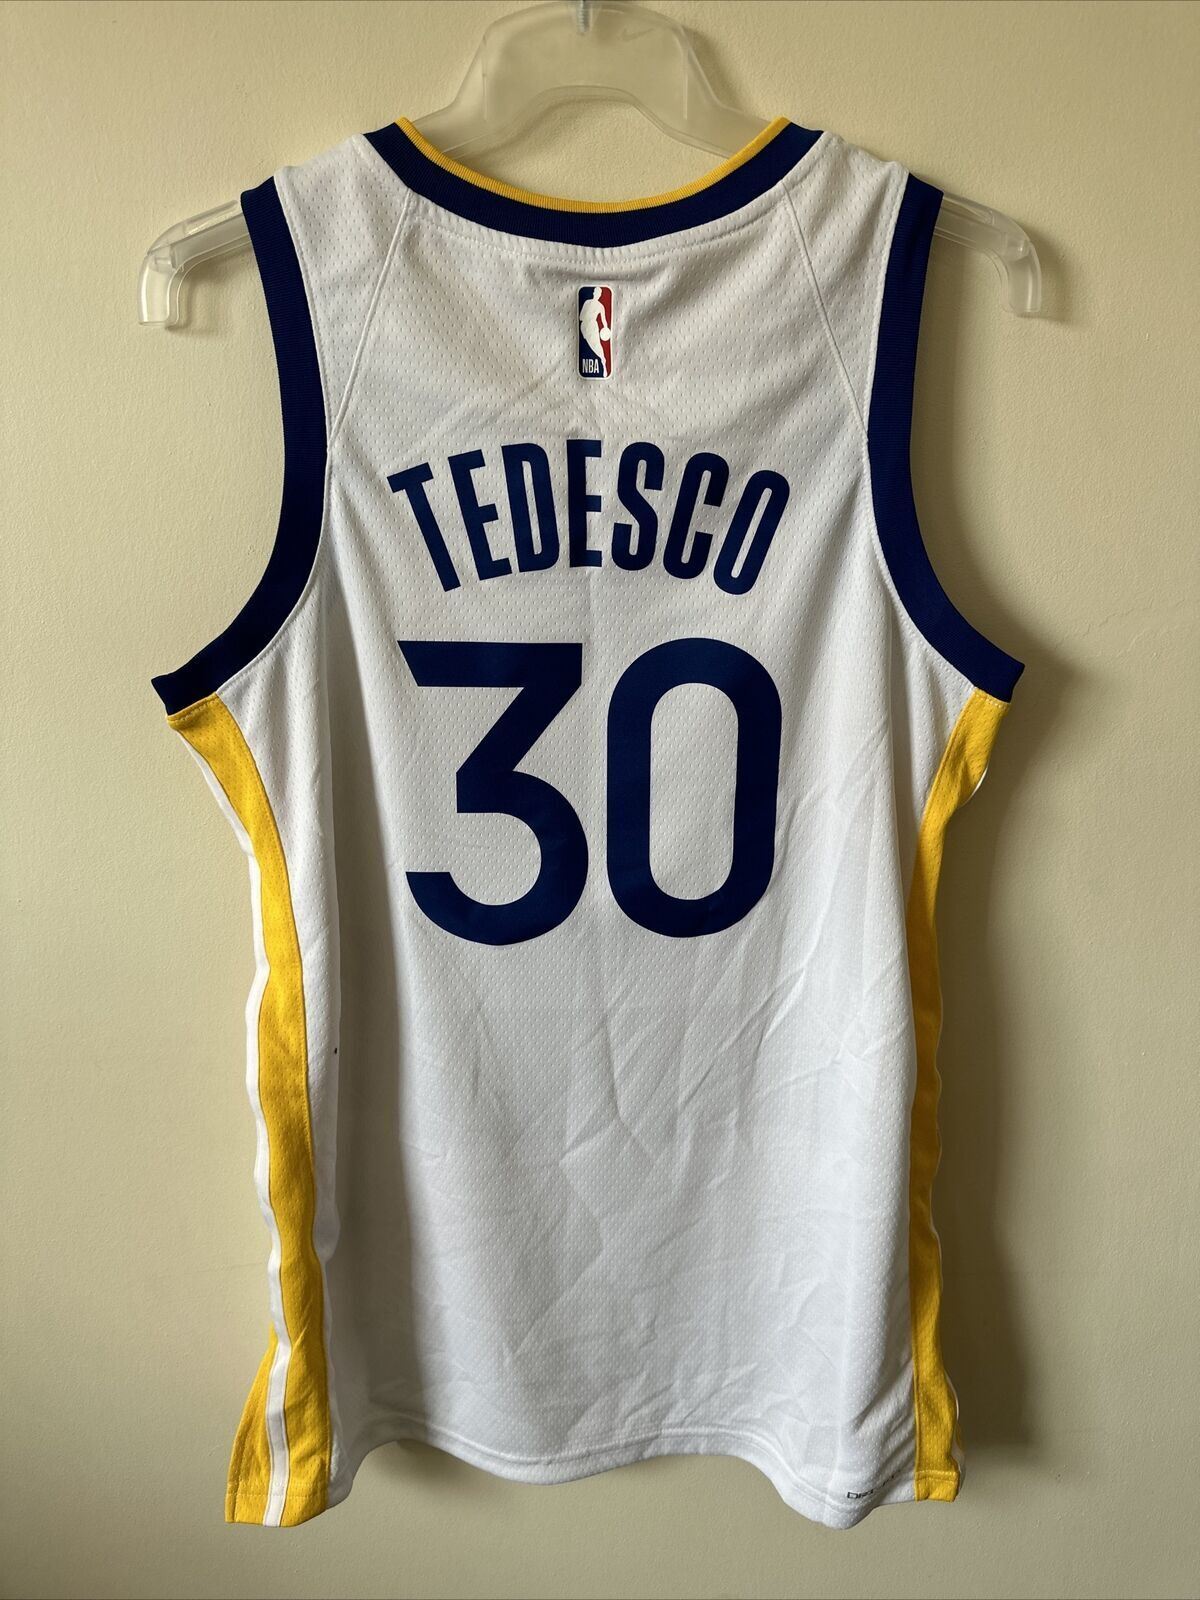 Nike NBA Golden State Warriors Association Edition Jersey TEDESCO 30 Men’s M